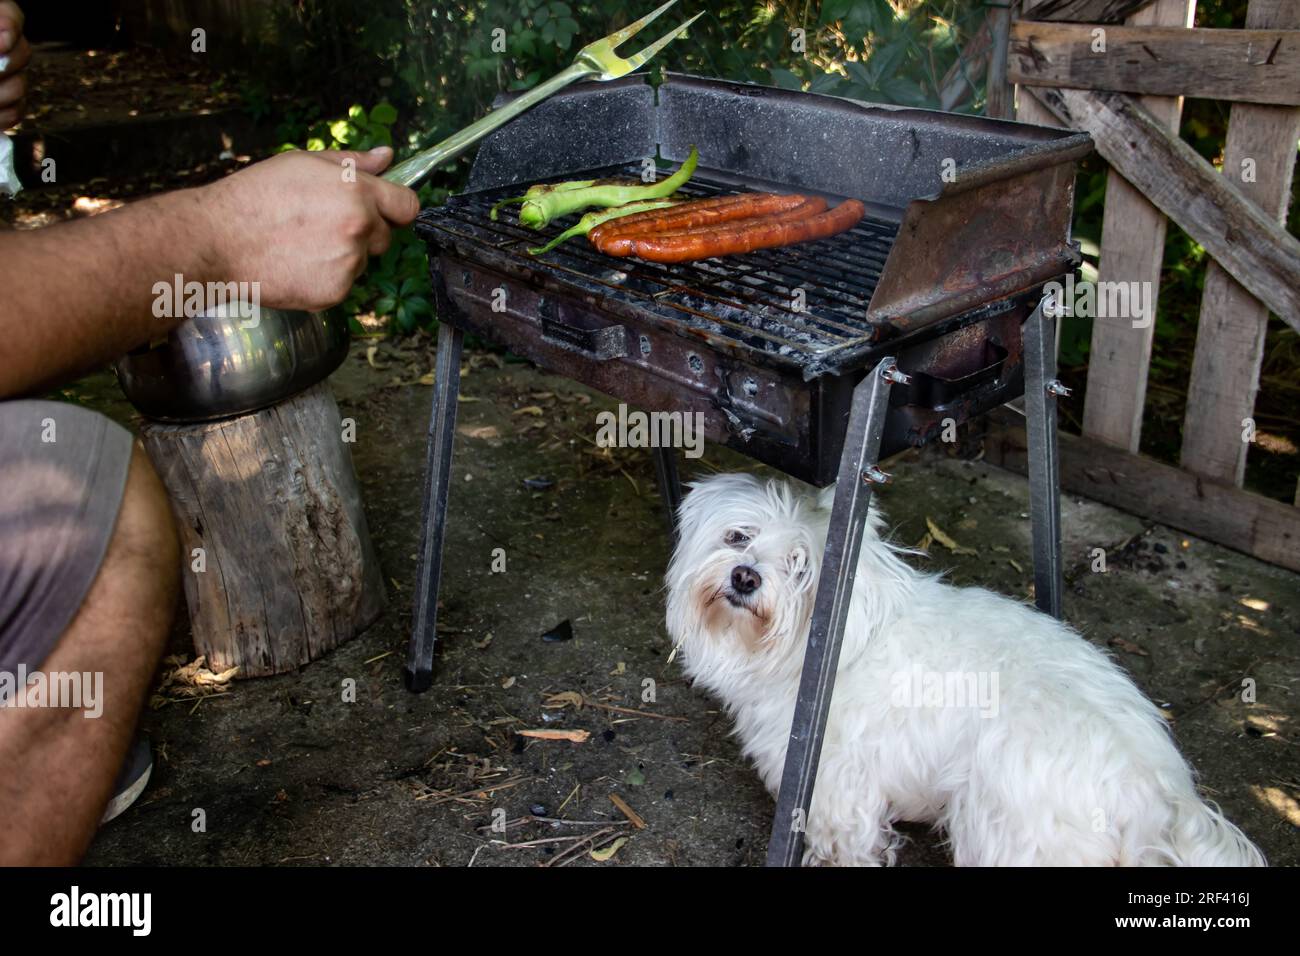 Piccolo e carino cane bianco sotto il barbecue a carbone, aspettandosi del cibo. Il Grill si trova nel cortile di casa di campagna, salsicce alla griglia e peperoni verdi alla griglia Foto Stock